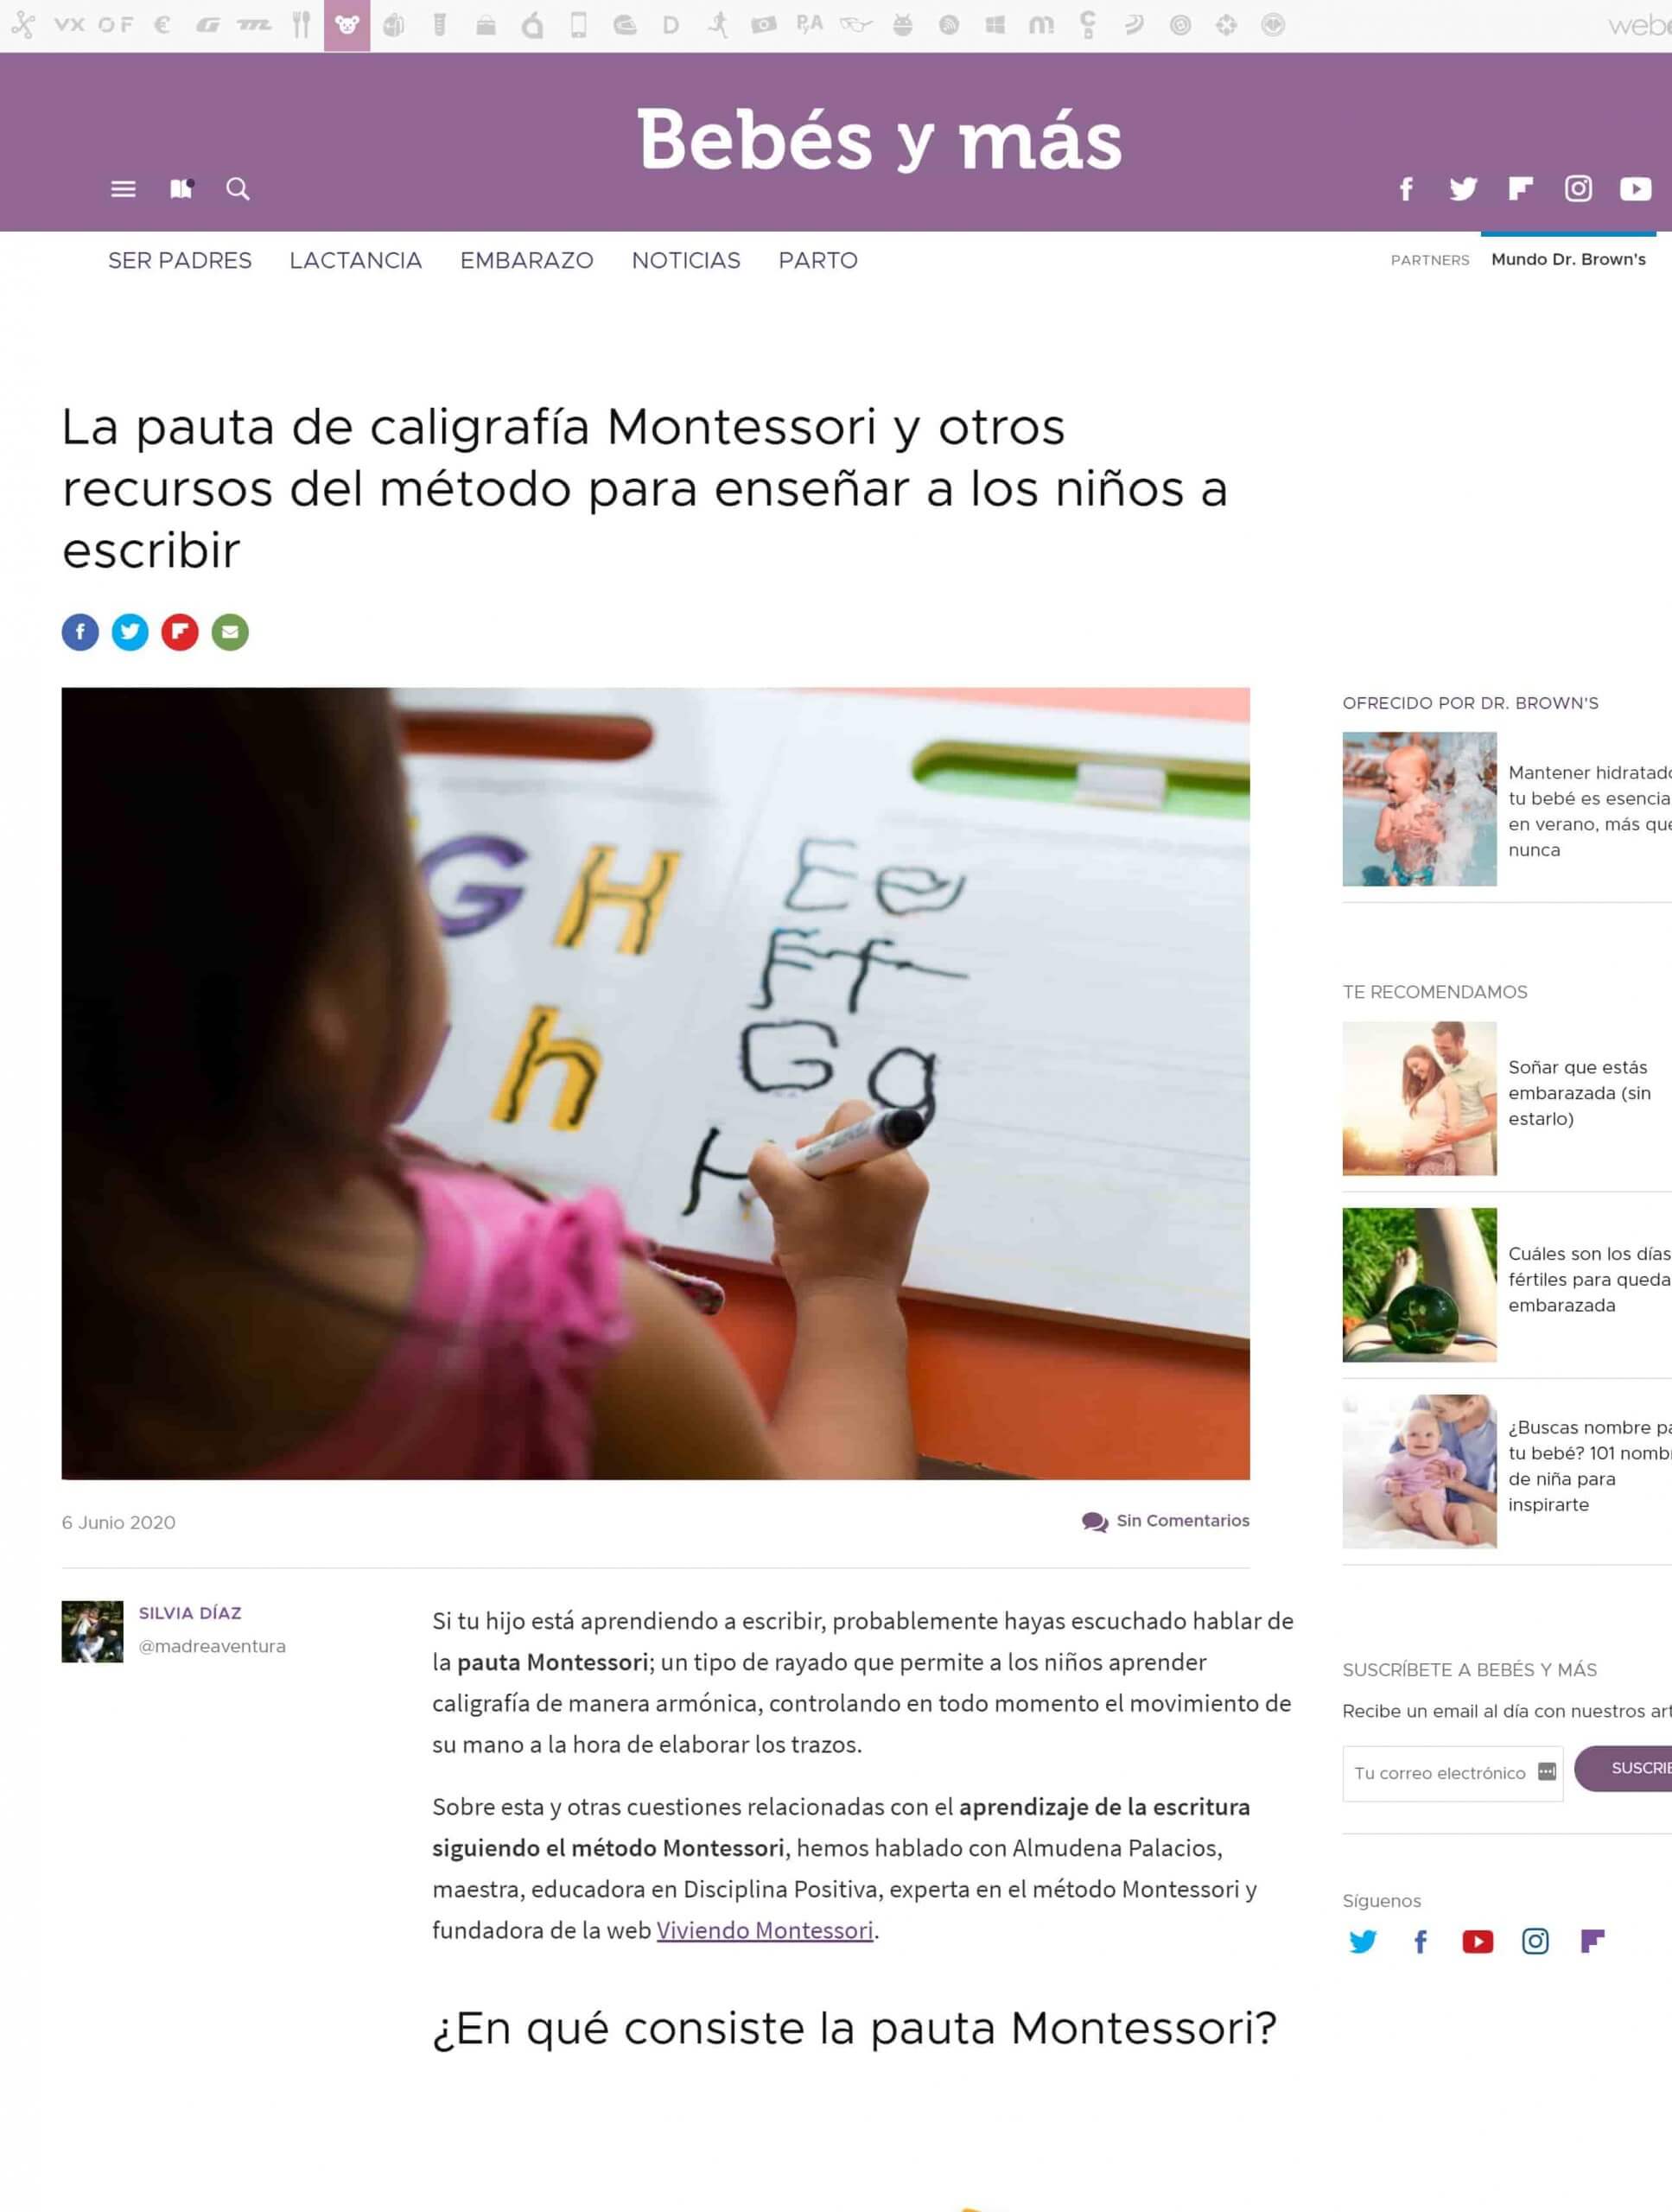 La pauta de caligrafía Montessori Almudena Palacios - Bebes y mas